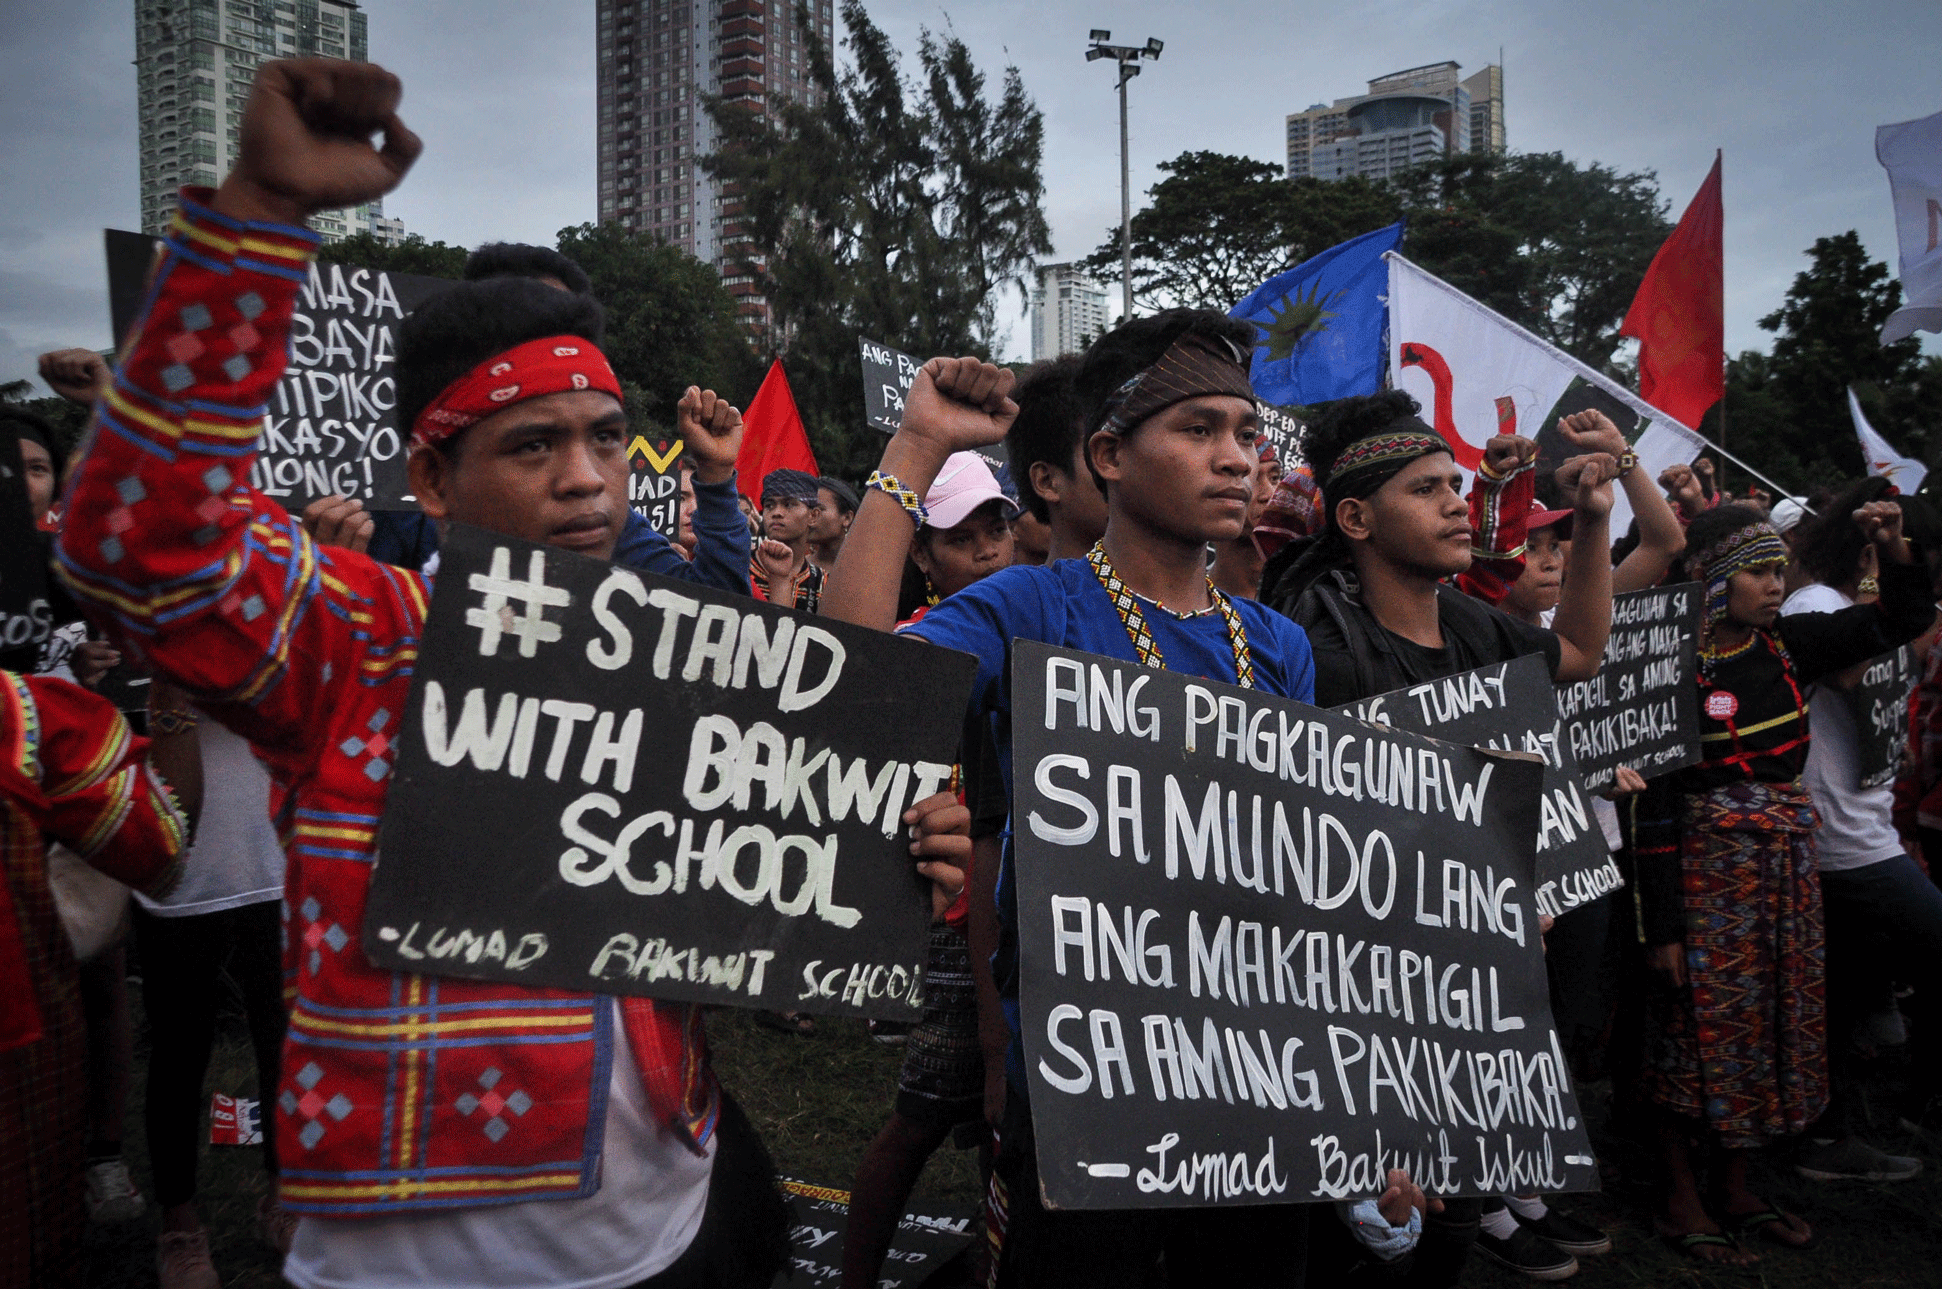 Kasama ang mga Lumad na mula sa mga esktuwlahang katutubo sa Mindanao na pinasasara ngayon ng rehimeng Duterte. <b>Neil Ambion</b>